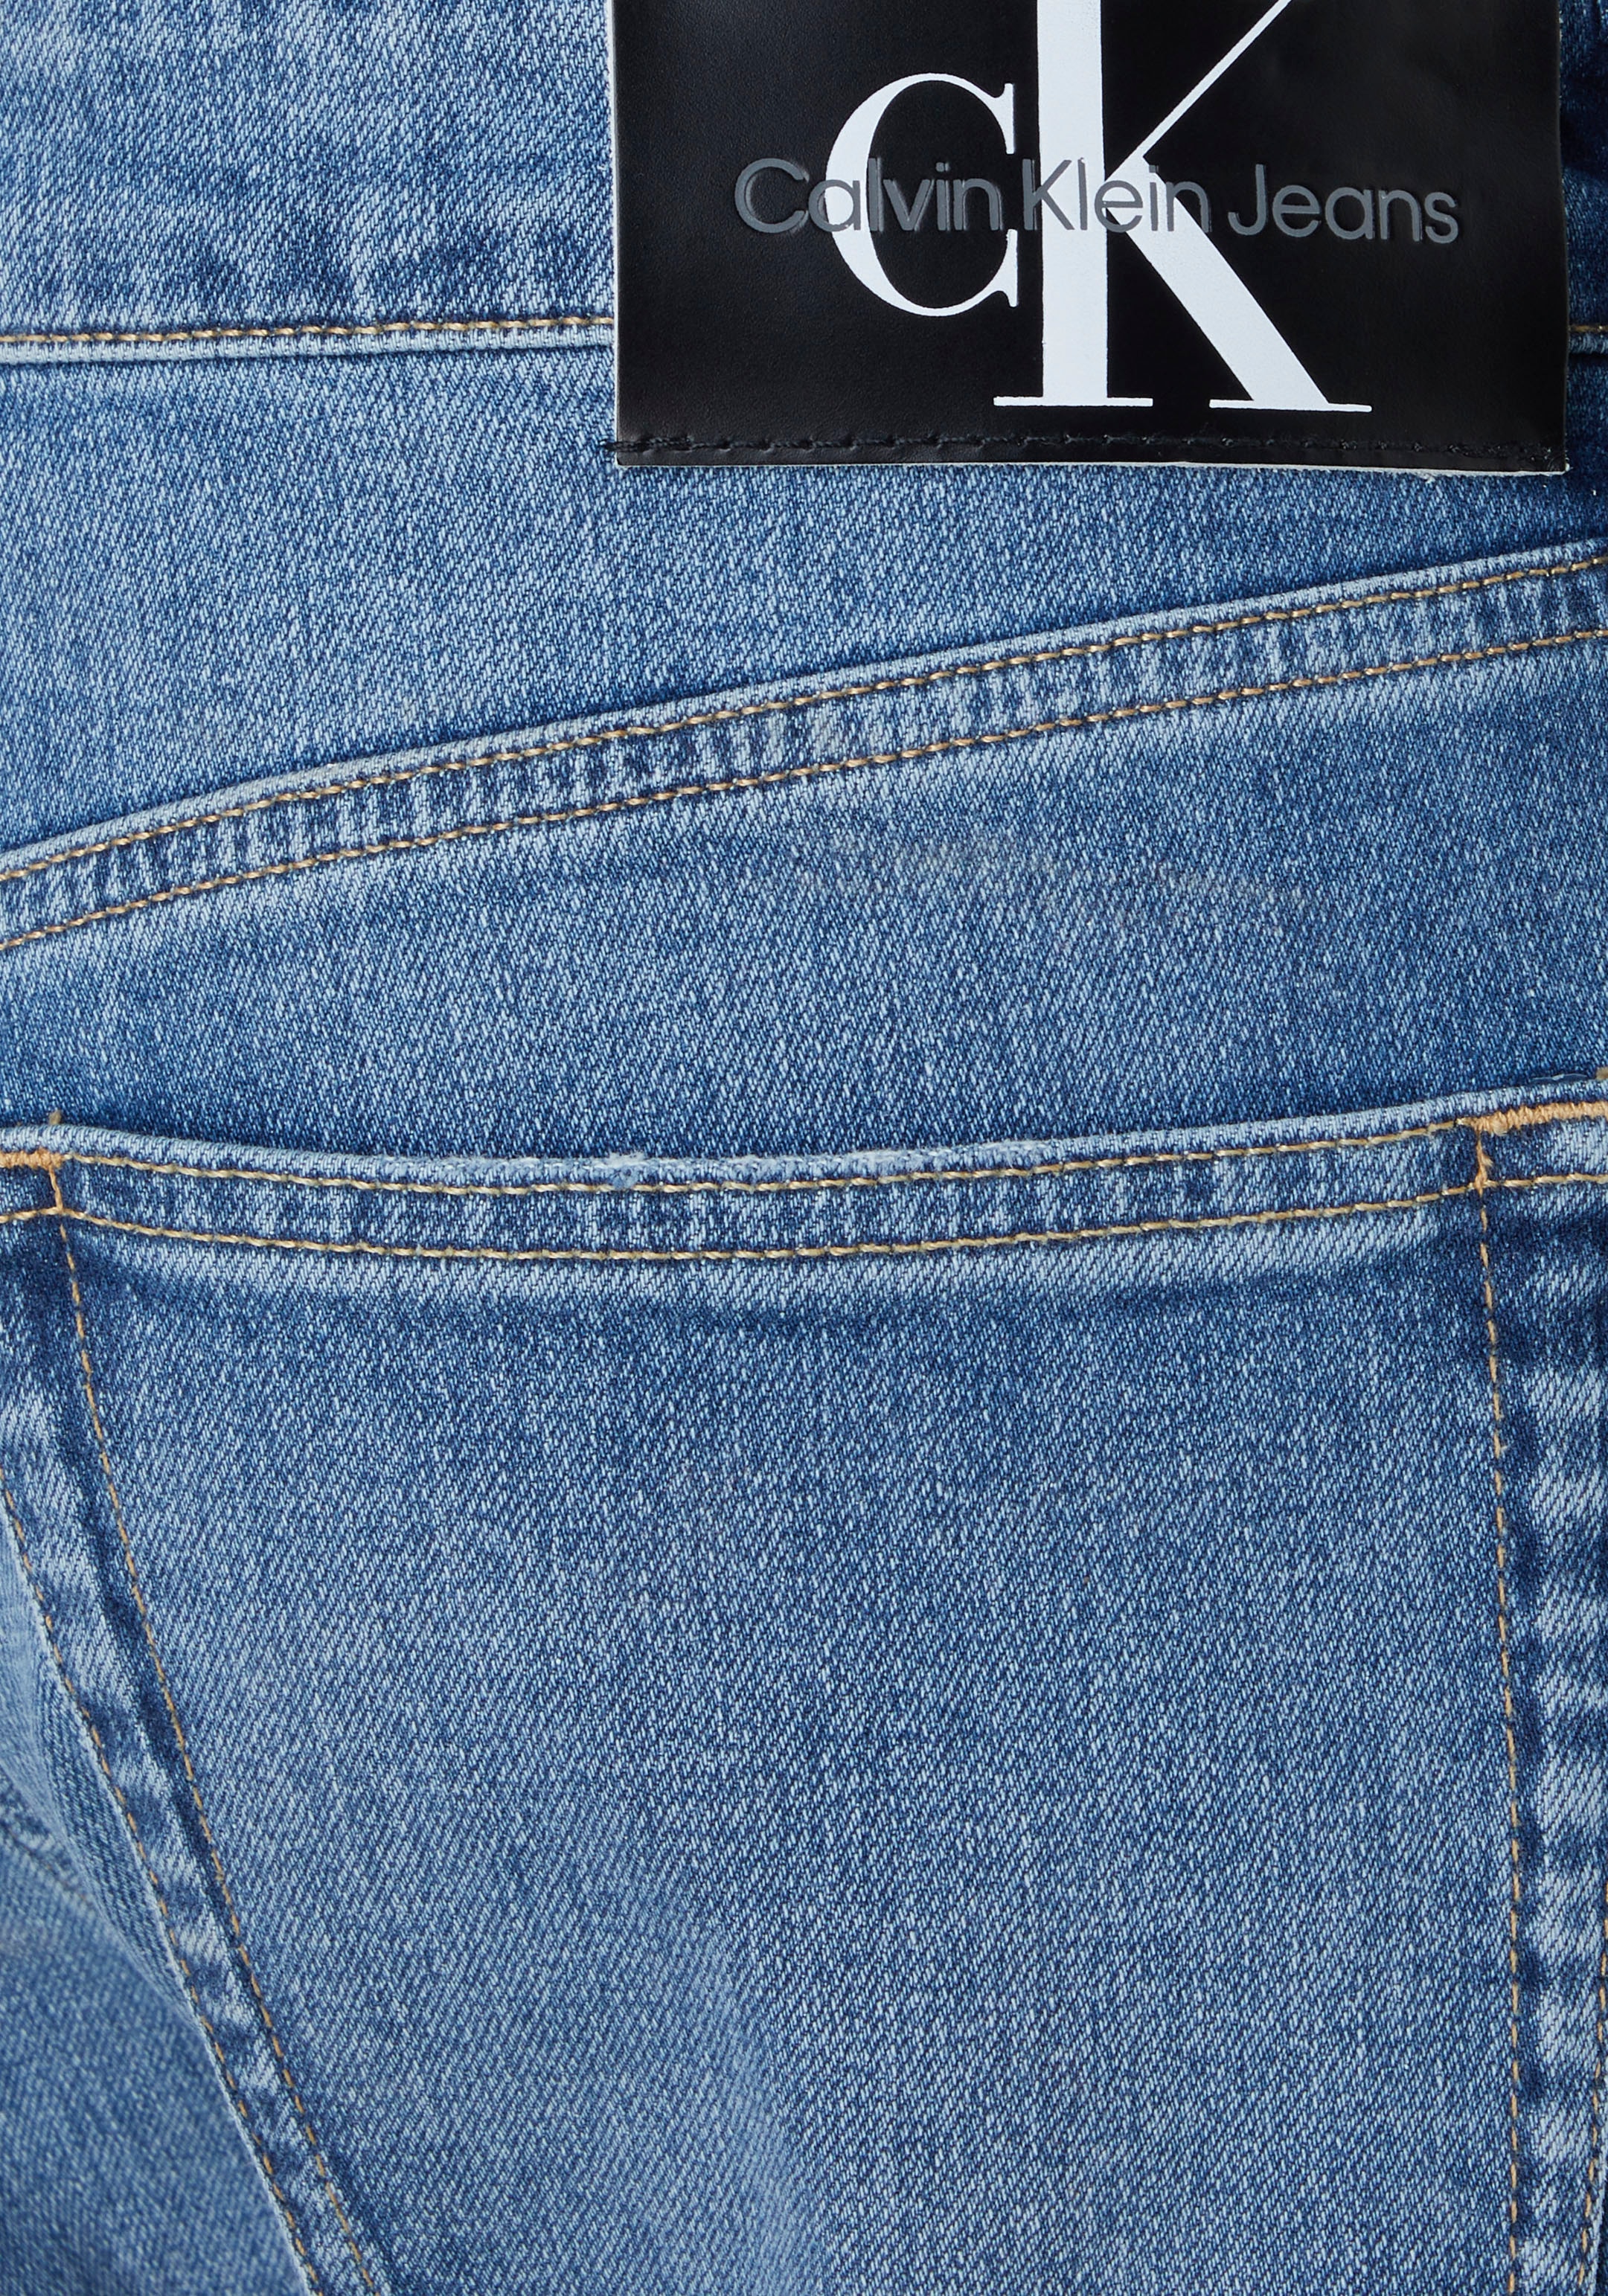 TAPER«, »SLIM kaufen OTTO Badge Jeans Calvin Klein Klein Leder- bei Calvin Tapered-fit-Jeans mit